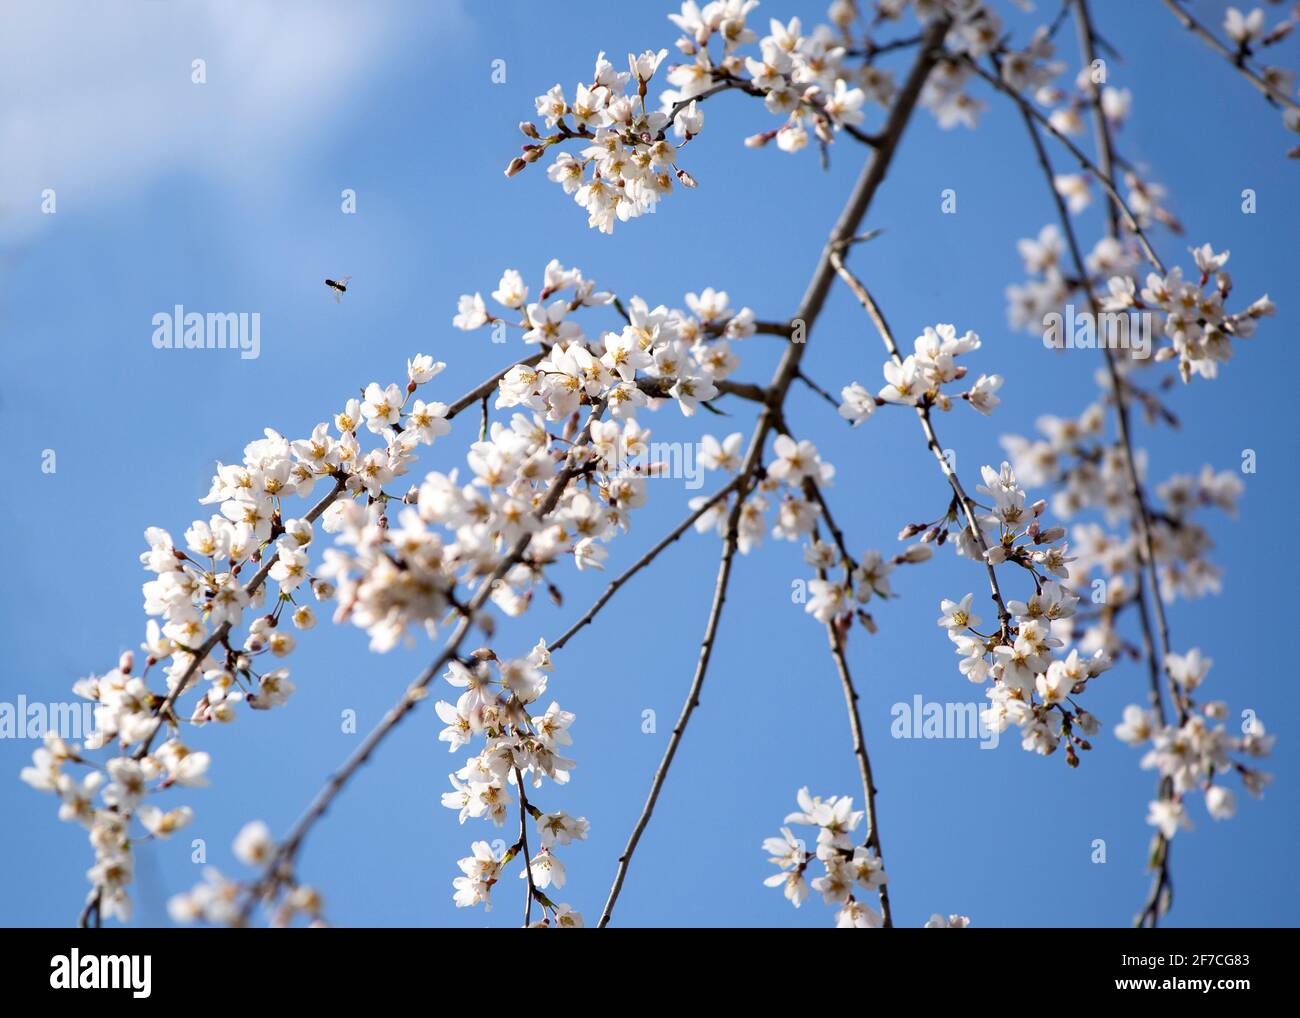 Les abeilles pollinisent les fleurs de cerisier, les bourgeons de printemps roses et blancs, les nouvelles feuilles vertes commencent à fleurir le long des branches d'arbres le jour ensoleillé d'avril Banque D'Images